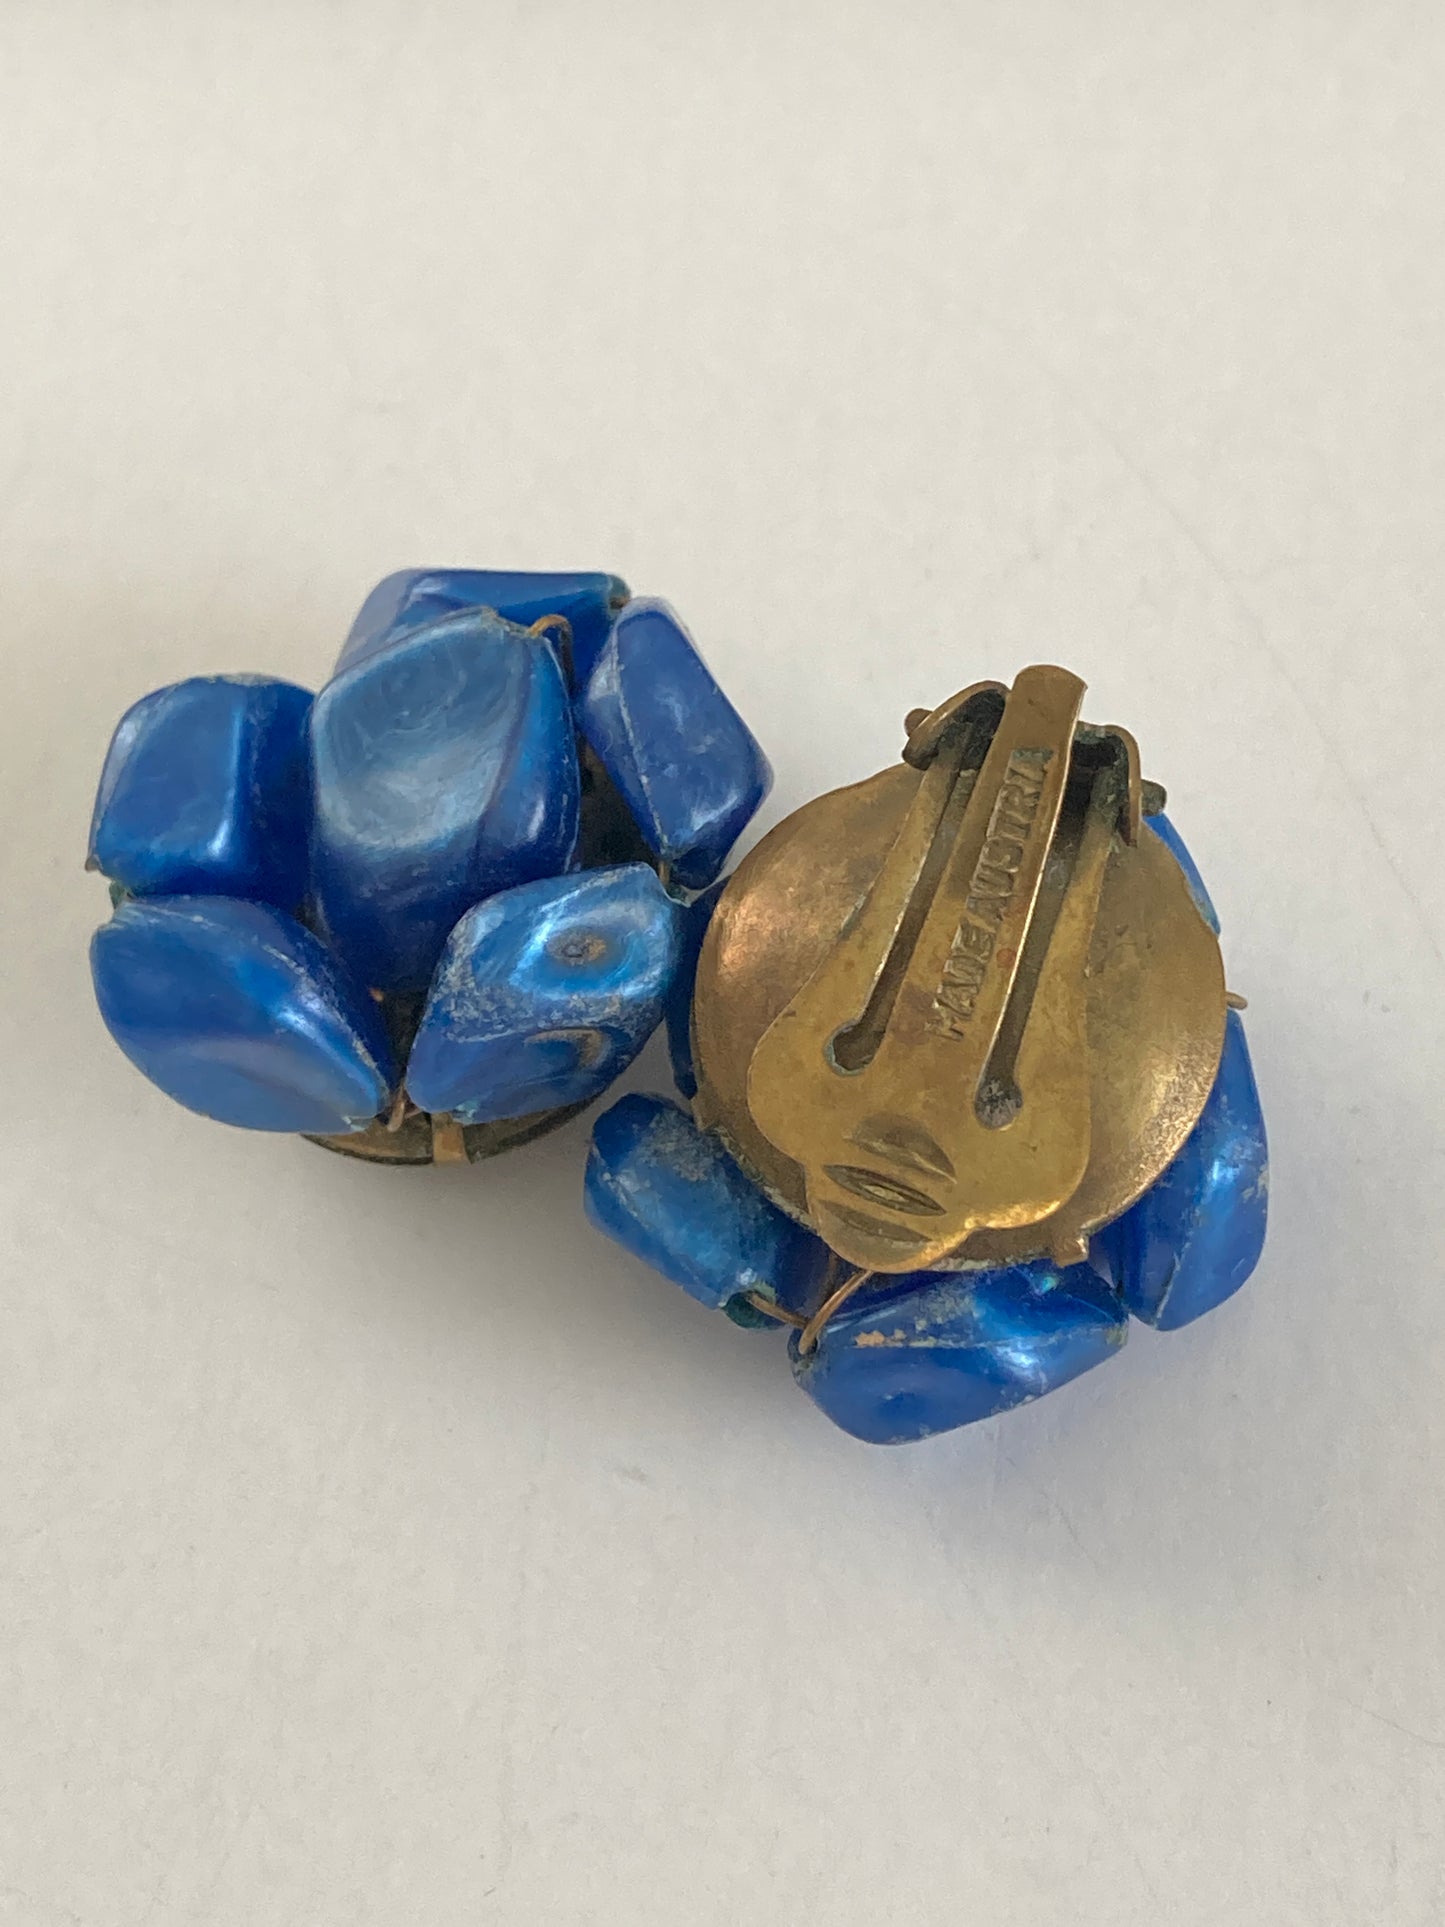 1940s Austrian Blue Cluster Earrings